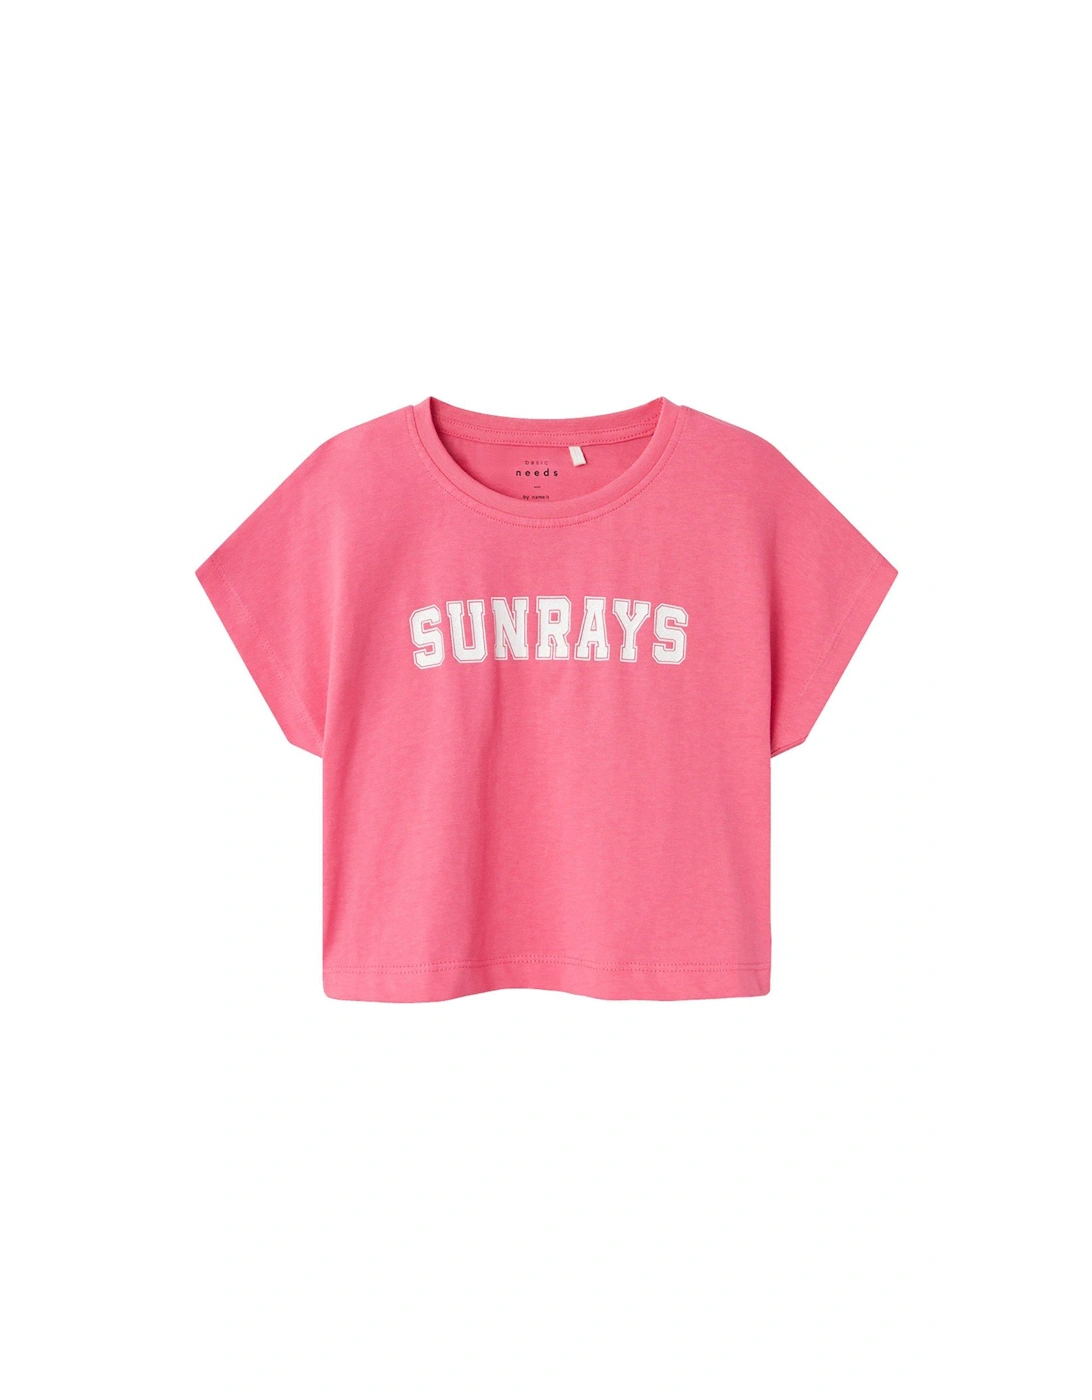 Girls Sunrays Cropped Short Sleeve Tshirt - Camelia Rose, 4 of 3